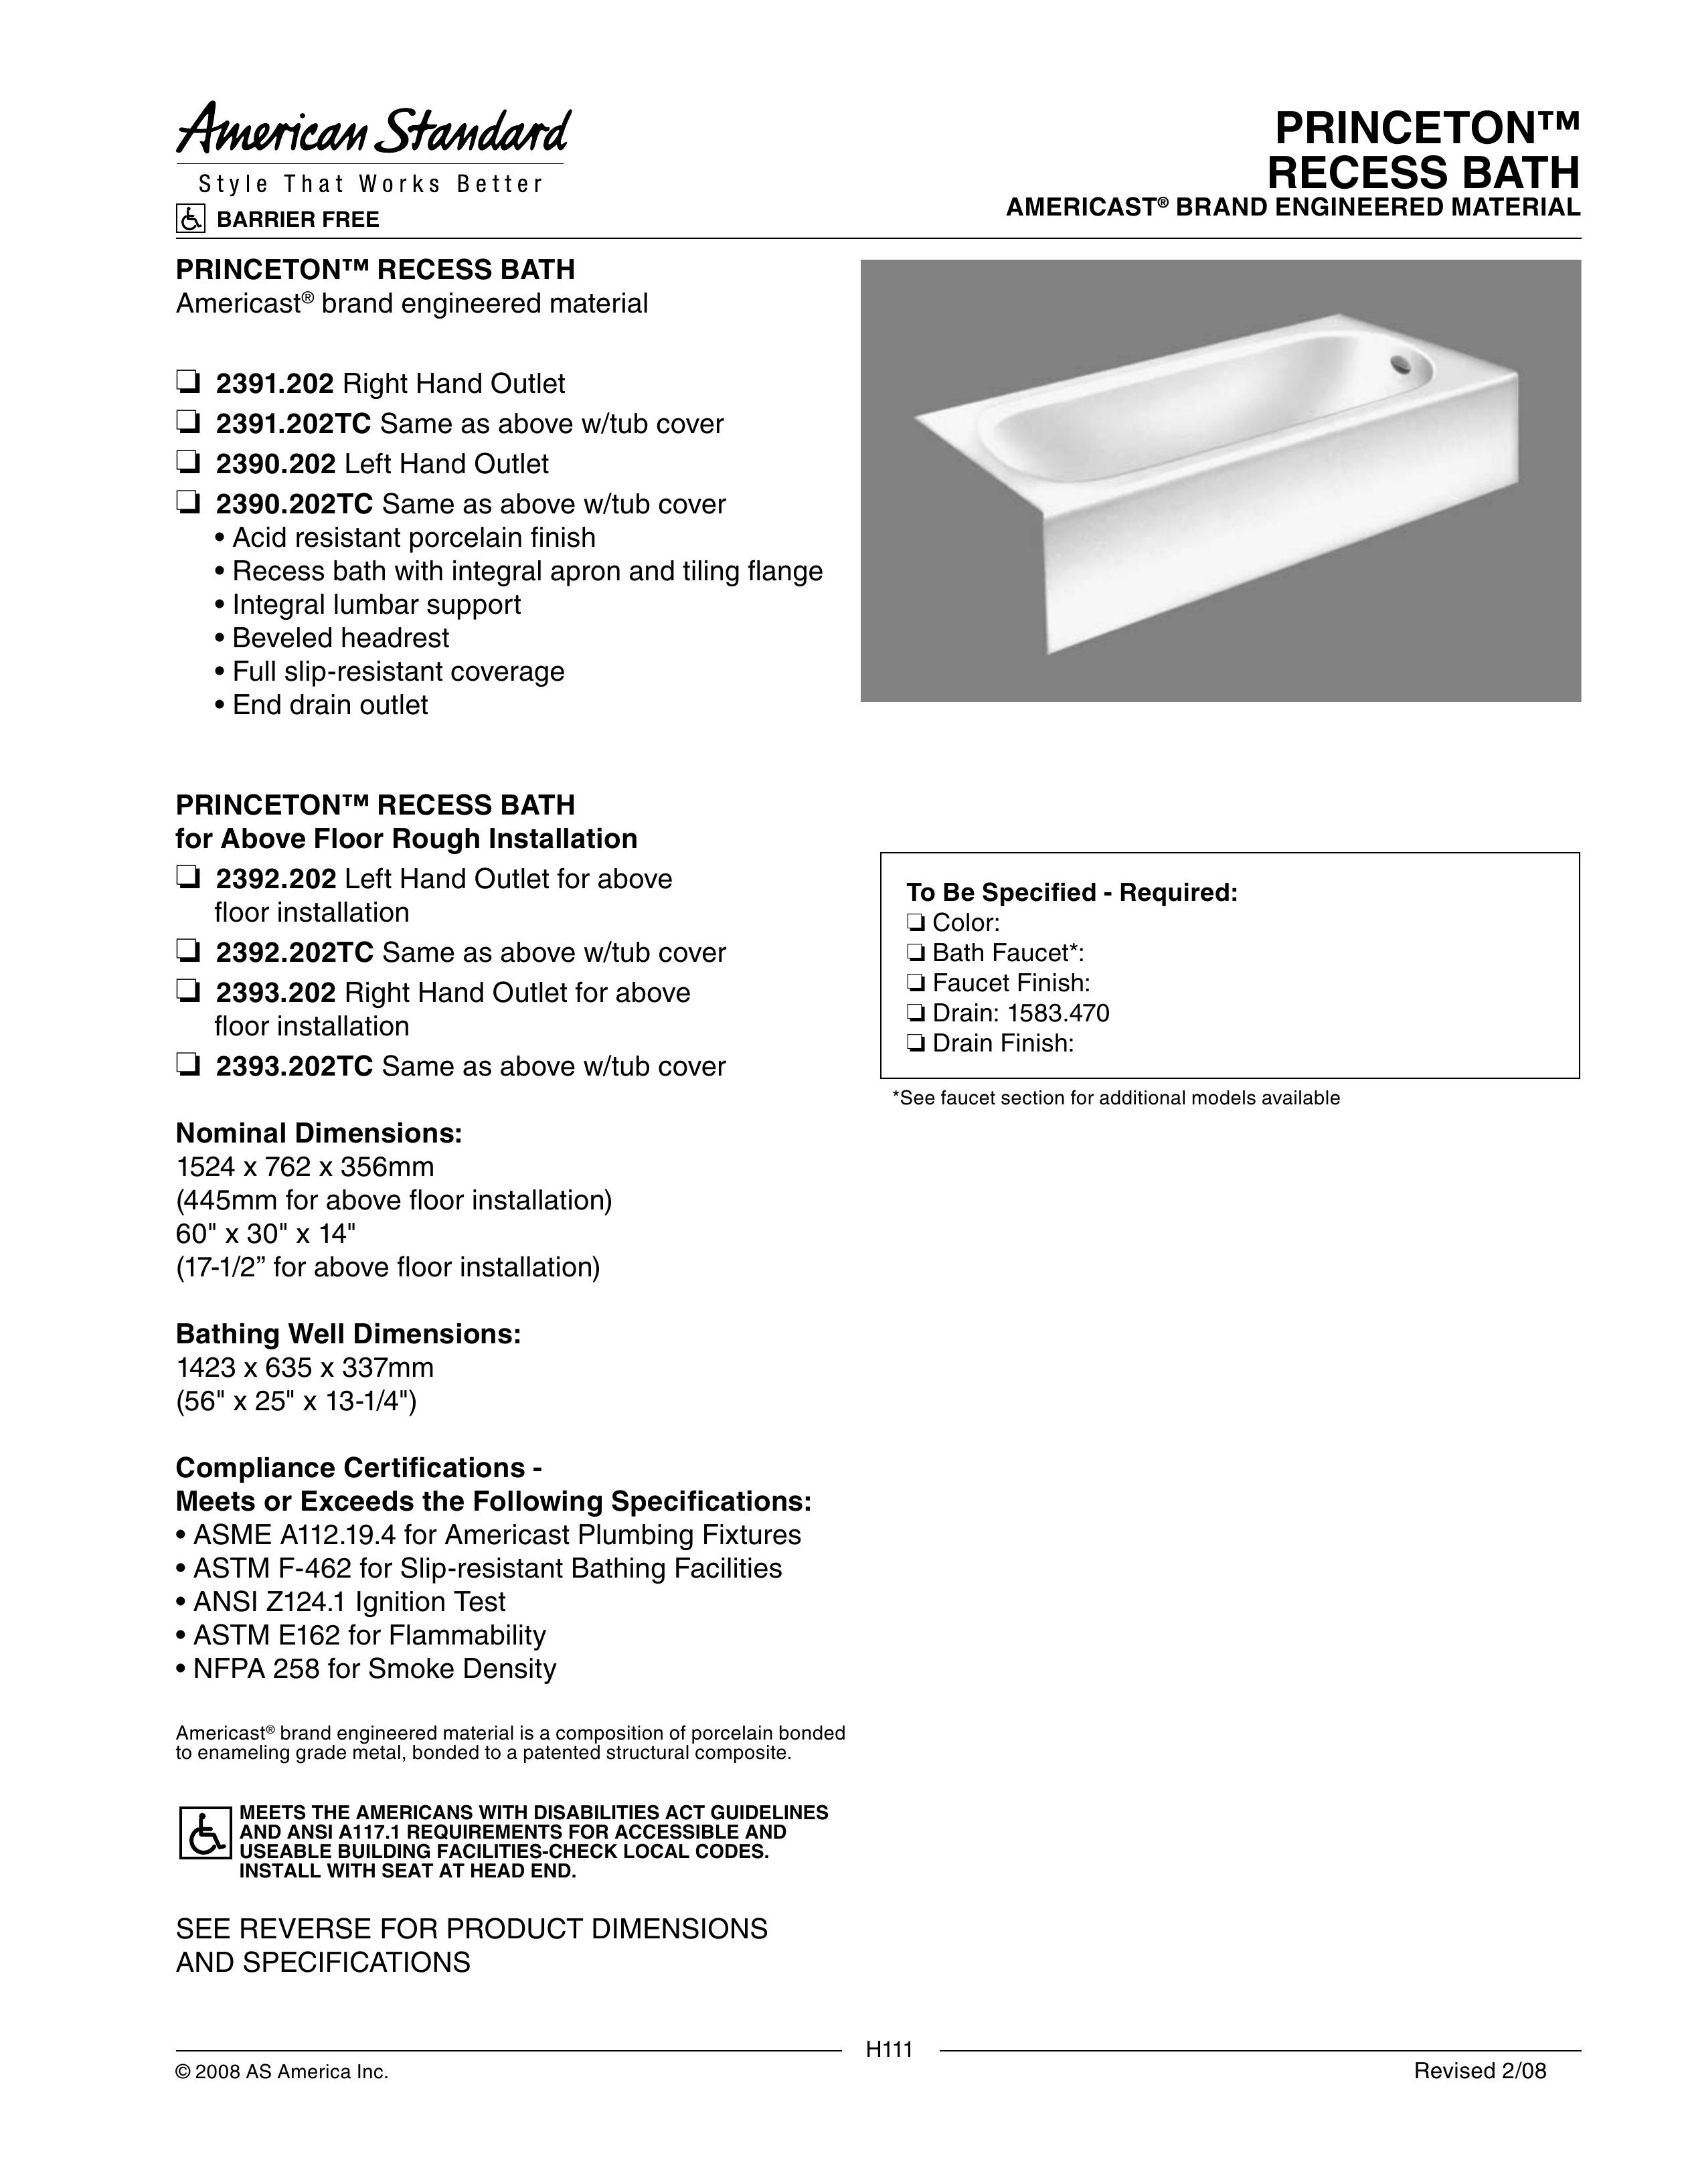 American Standard 2390.202 Hot Tub User Manual